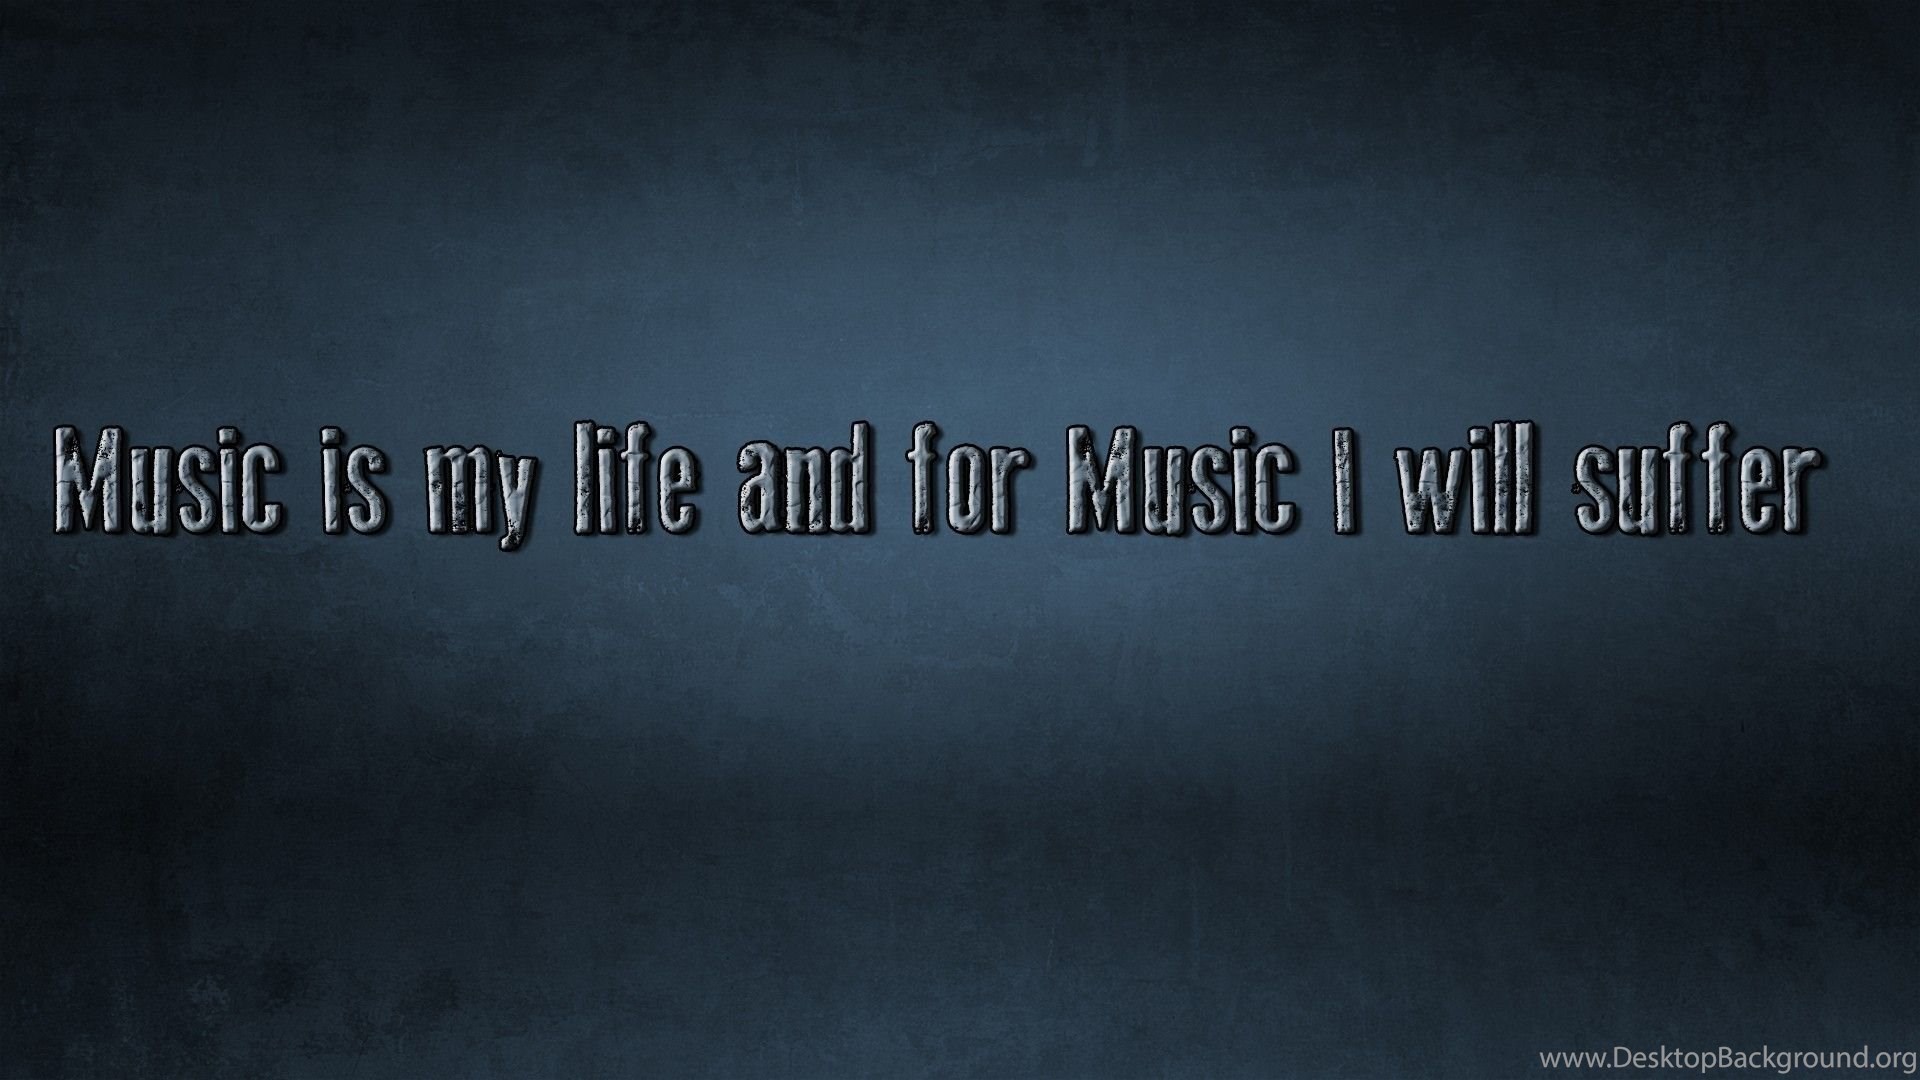 Word is my life. Music my Life обои. Music is Life. Music is my Life. Картинки Music is my Life на рабочий стол.